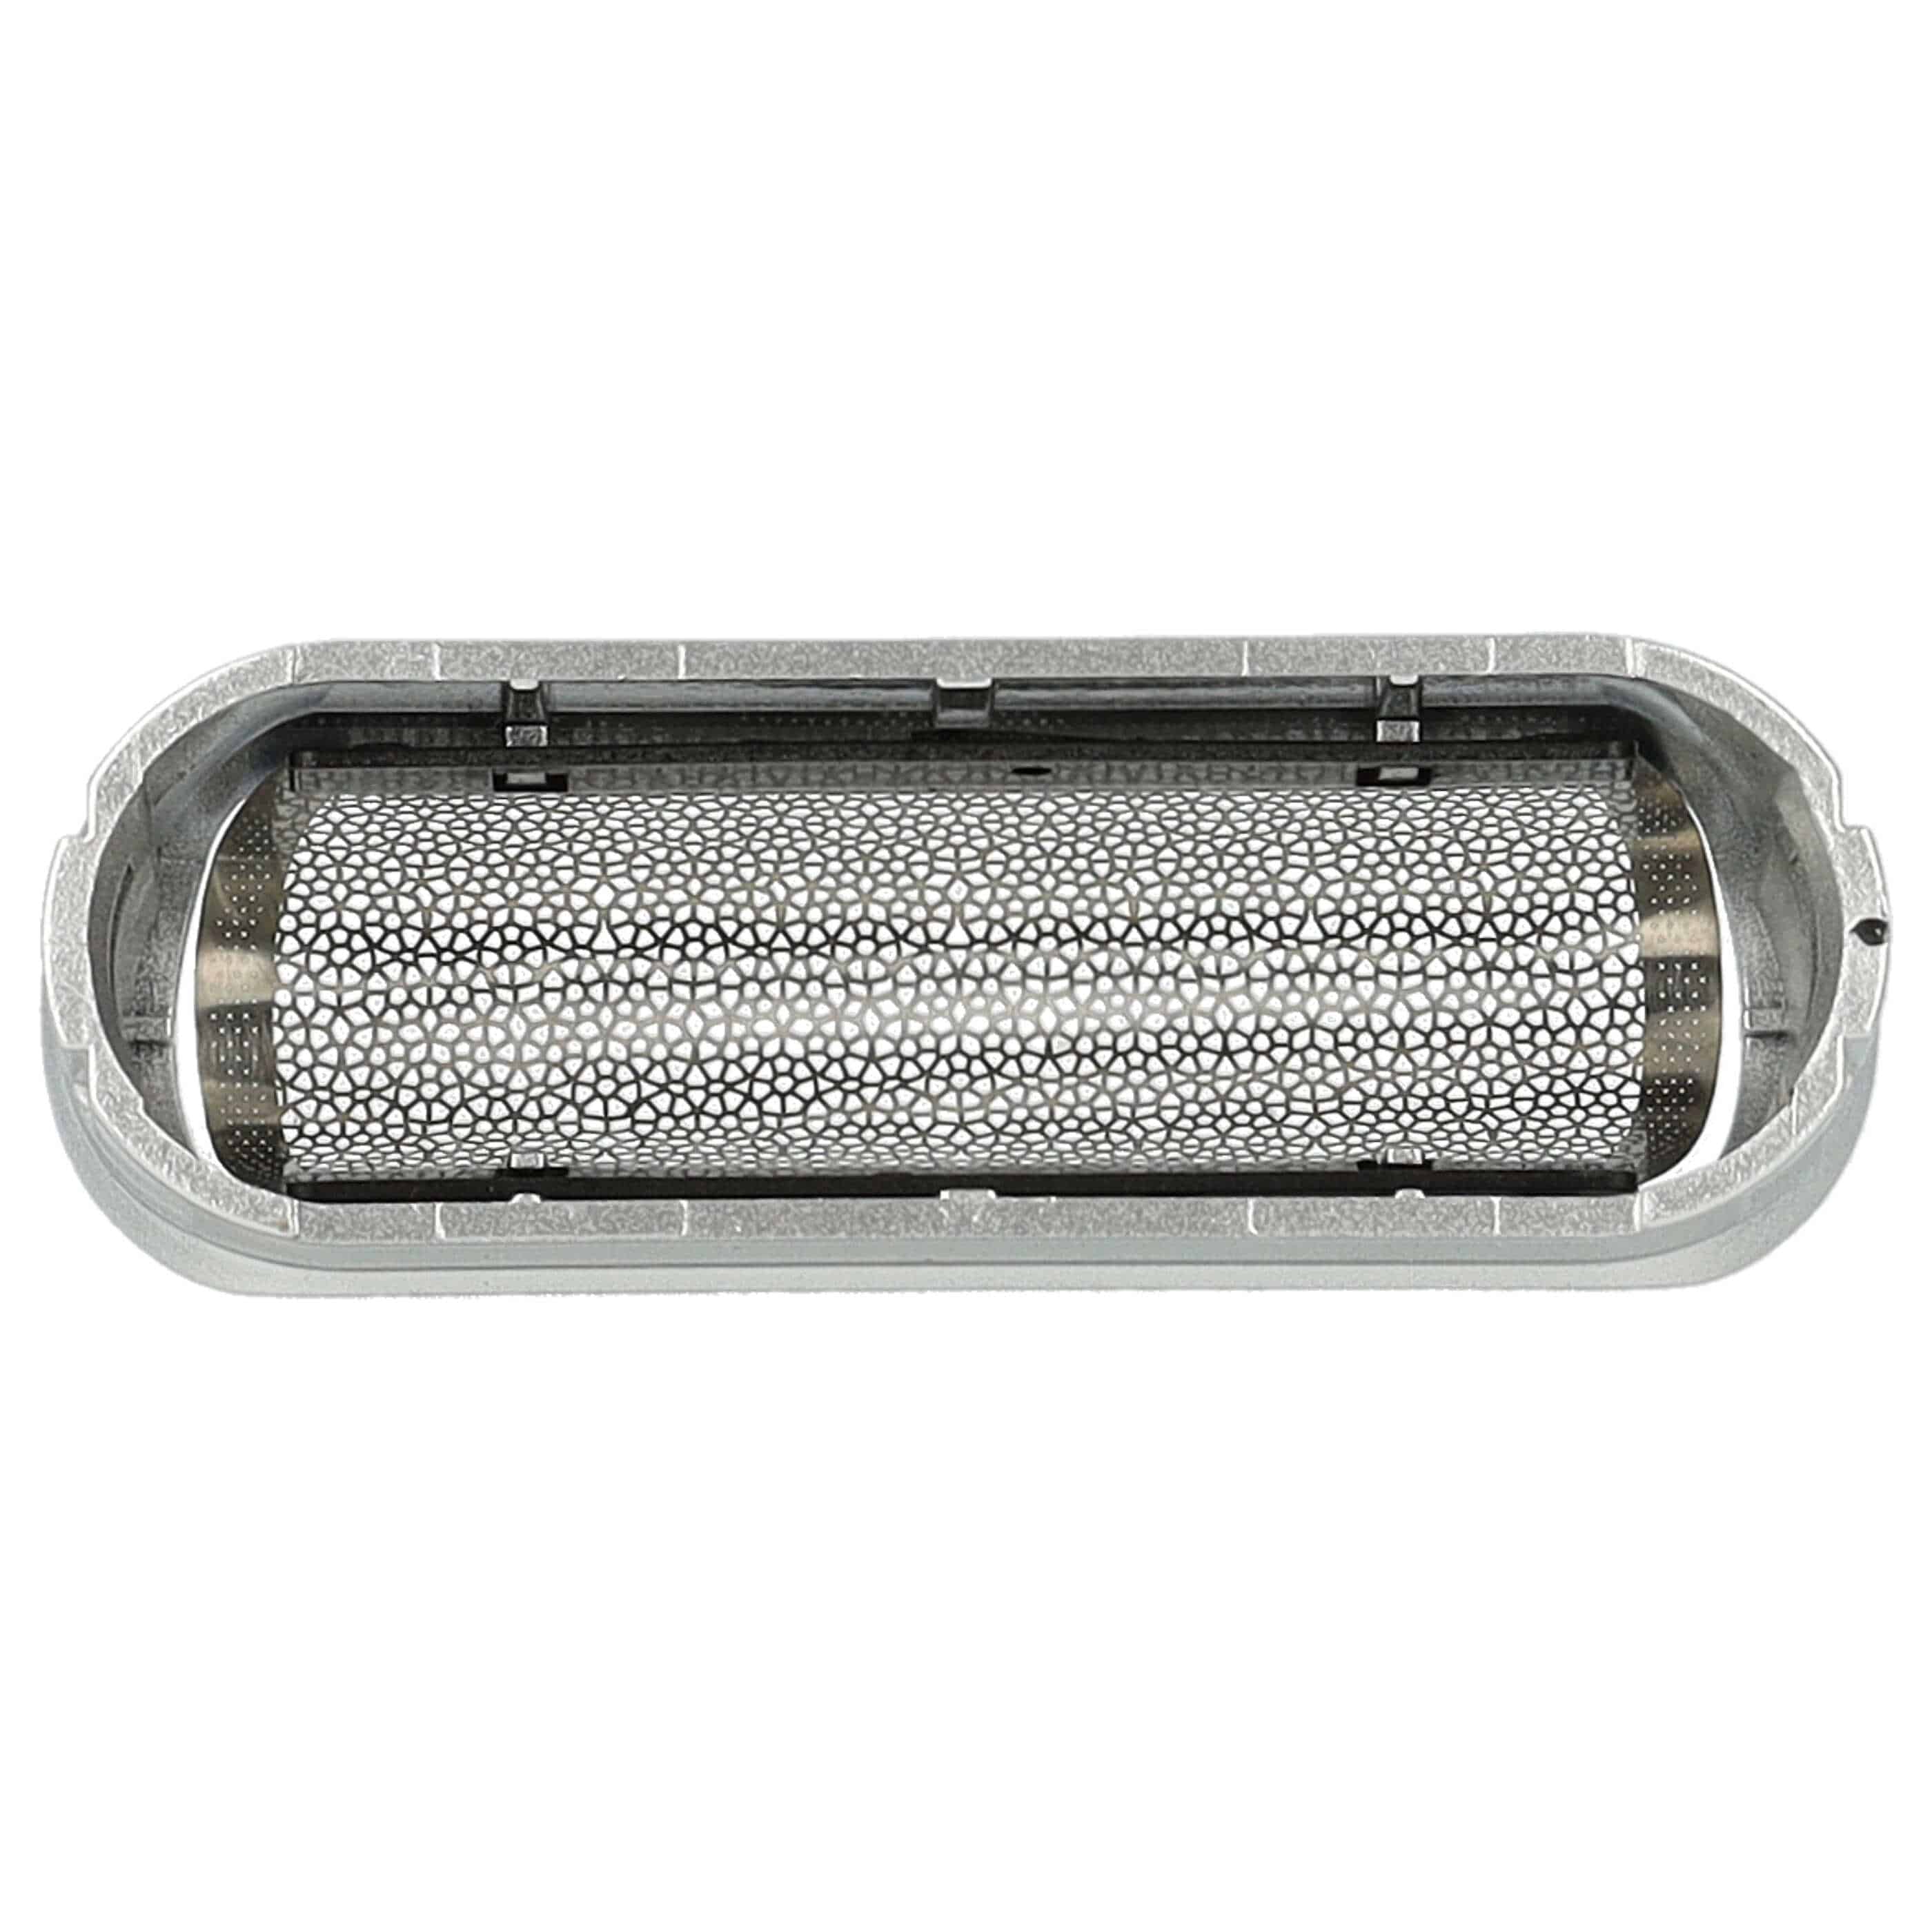 Lámina de corte reemplaza Braun 5S para afeitadoras Braun - incl. marco, plata